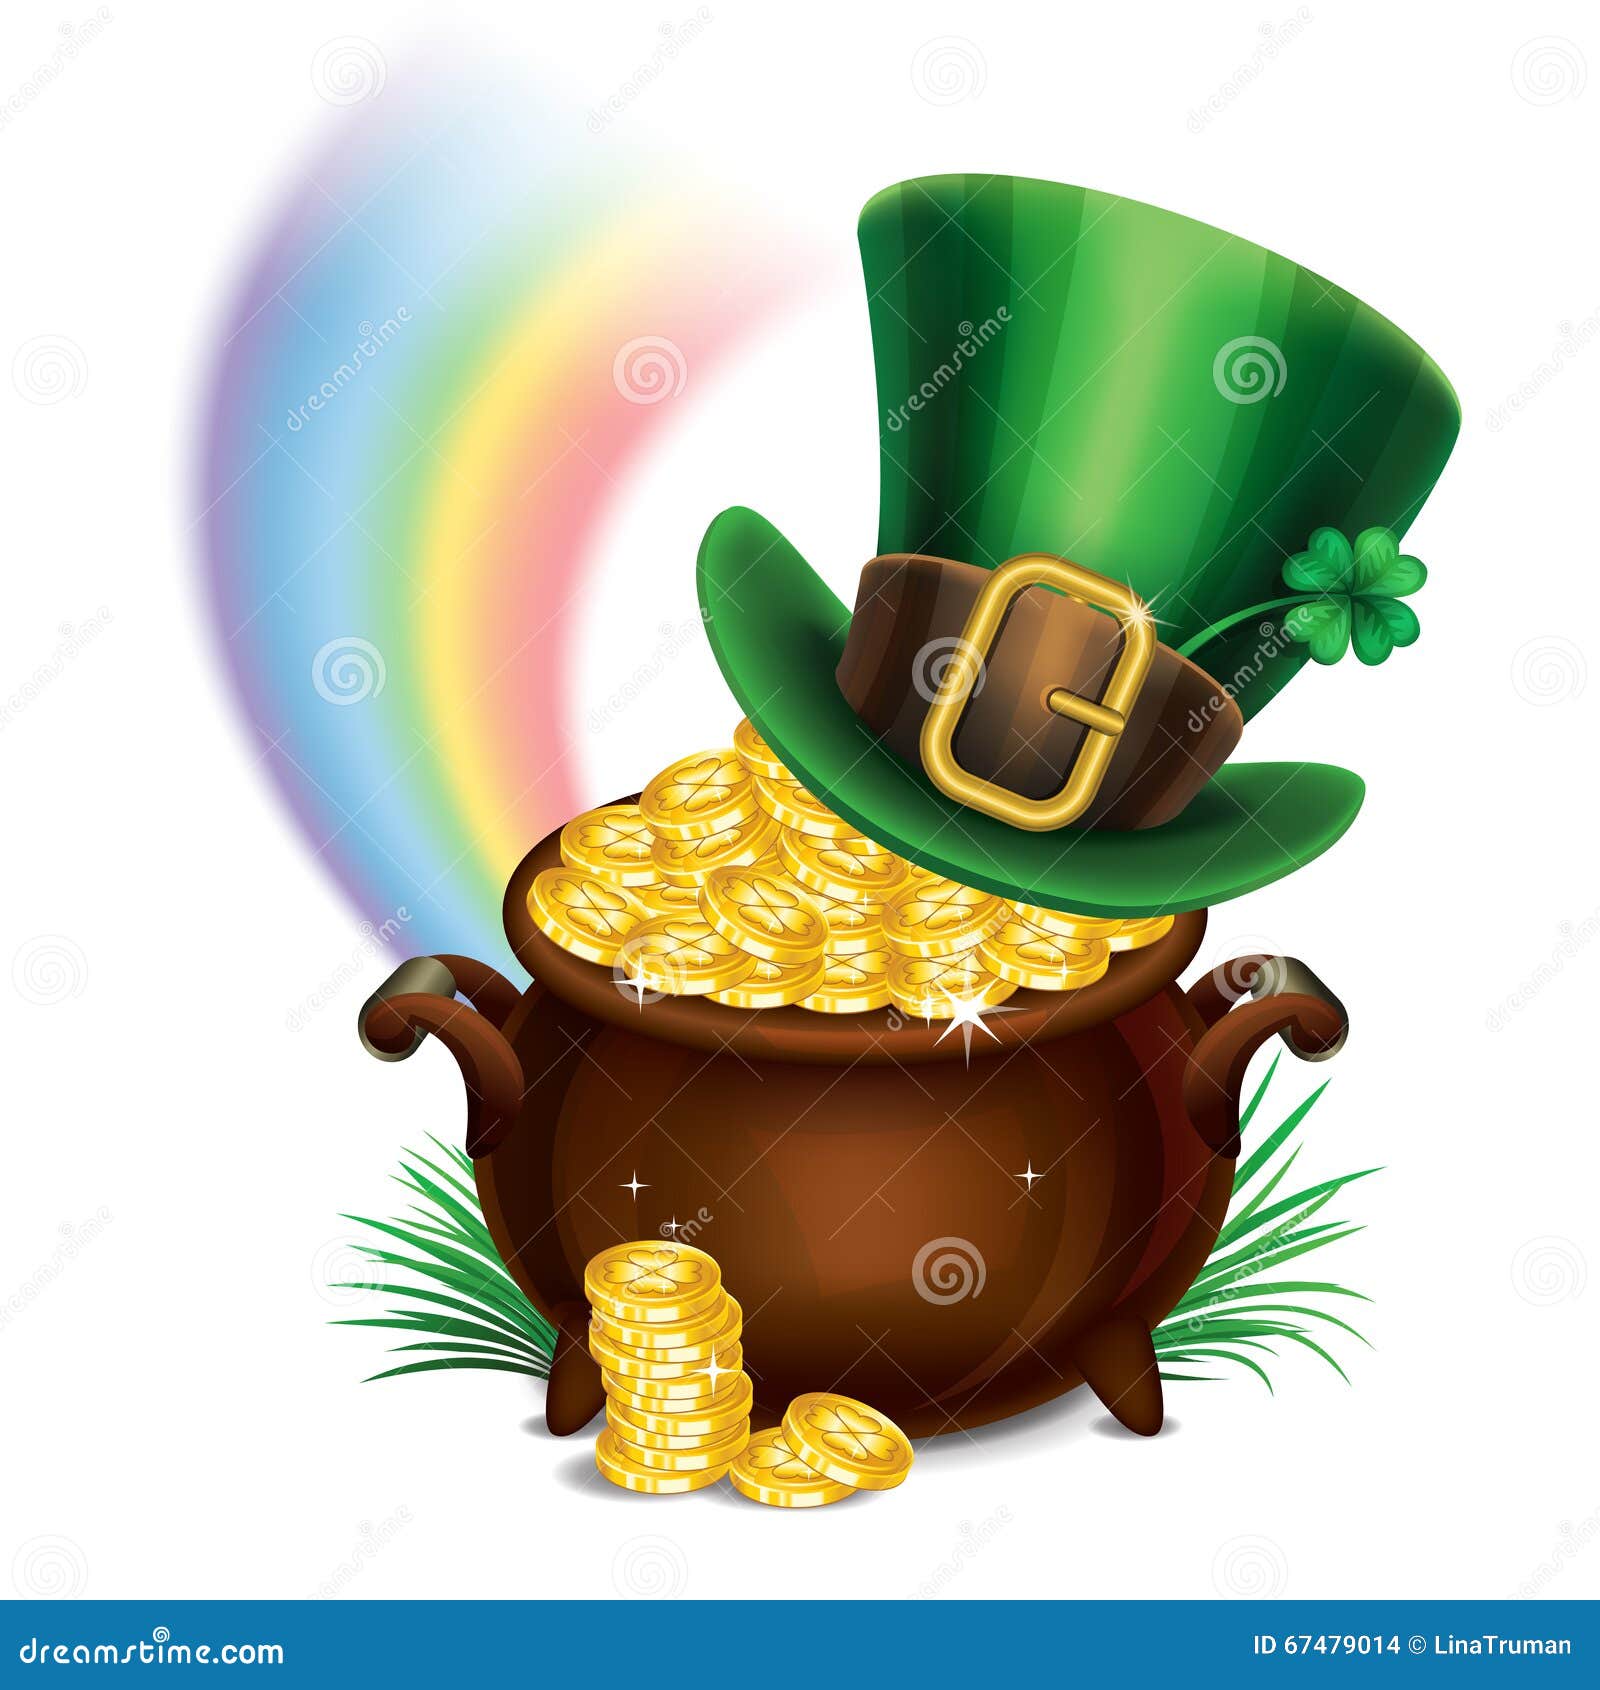 Cùng đón mùa lễ St. Patrick thật đầy sắc màu và phong phú với chiếc mũ Leprechaun đặc trưng. Ấn tượng với kiểu dáng nhỏ xinh và màu sắc rực rỡ, chiếc mũ sẽ giúp bạn trở thành chính mình là một chú Leprechaun vui tươi trên mỗi bức ảnh.